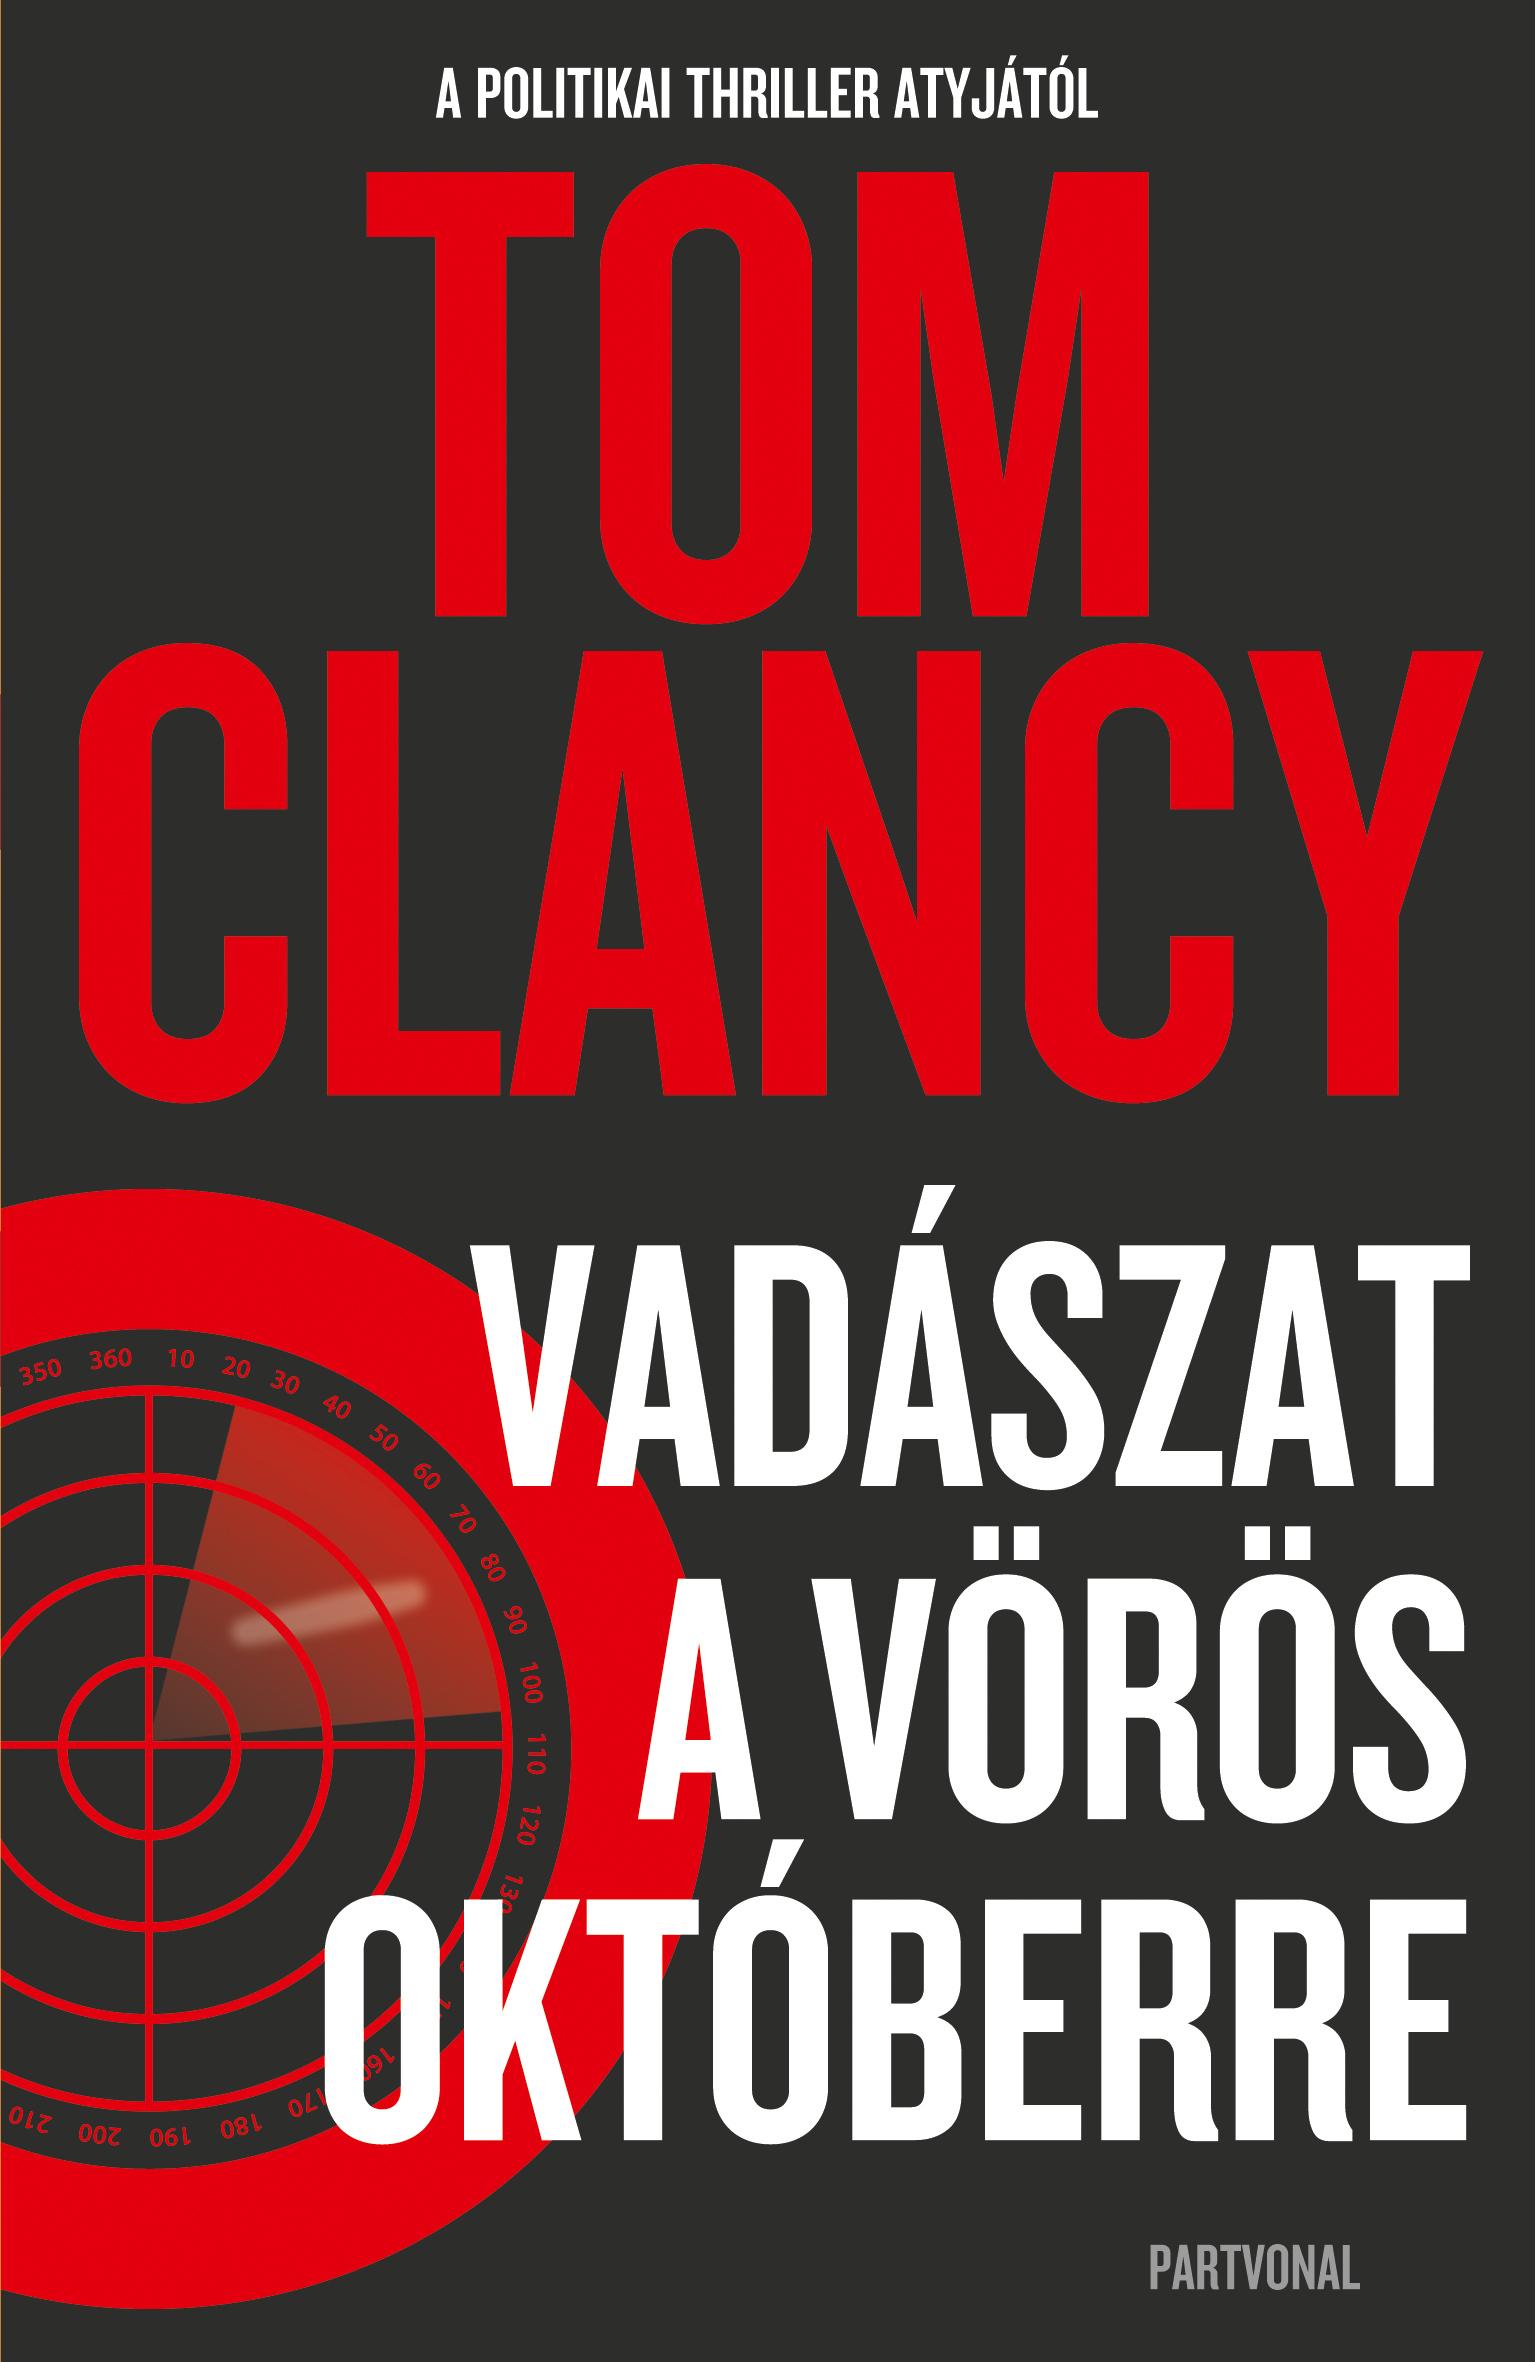 Tom Clancy - Vadászat a Vörös Októberre [outlet]